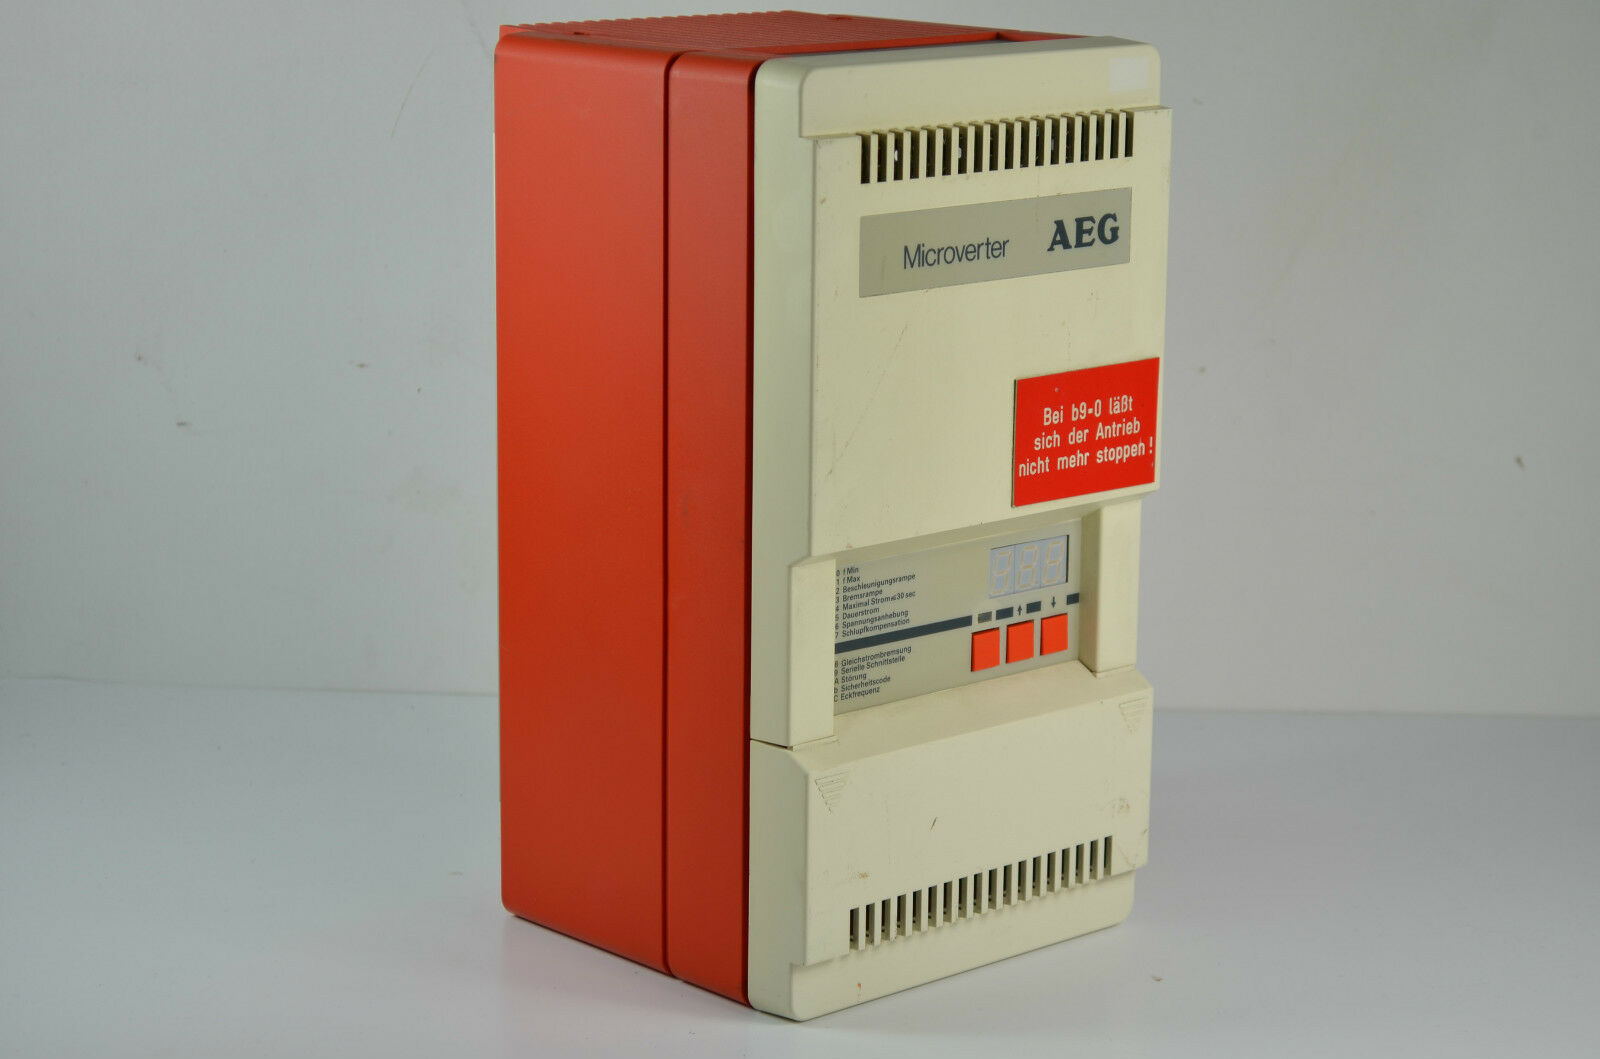 AEG Microverter D 2.5/500  029.130 003 ( 148940 )